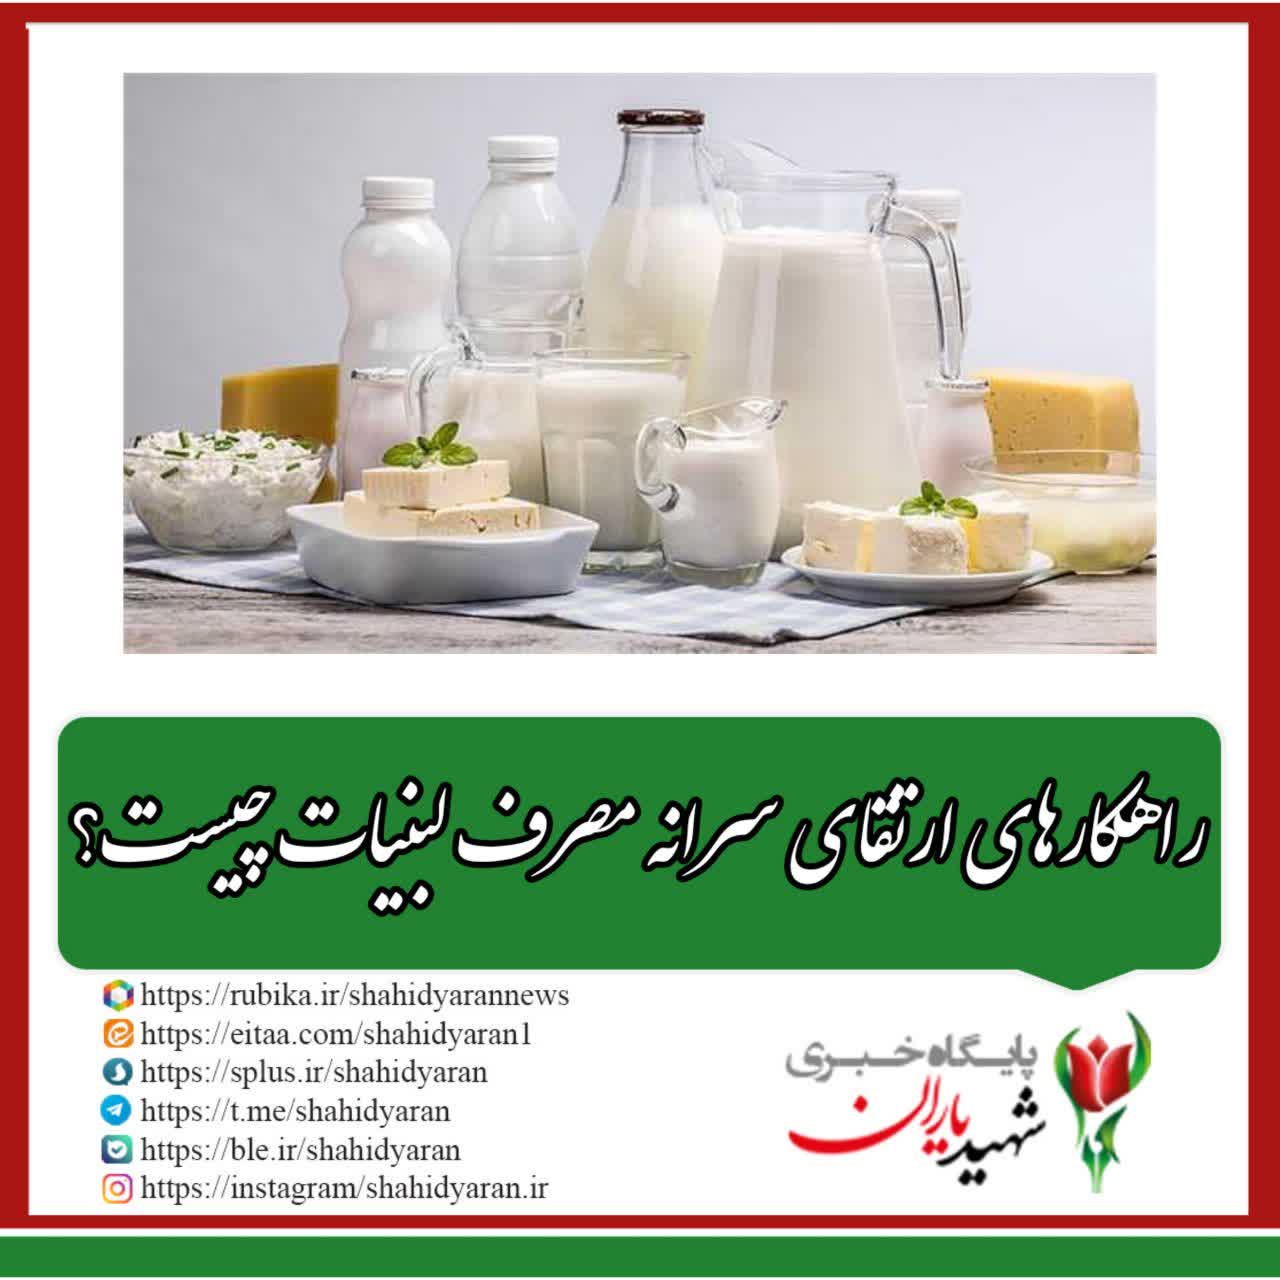 به مناسبت روز جهانی شیر؛